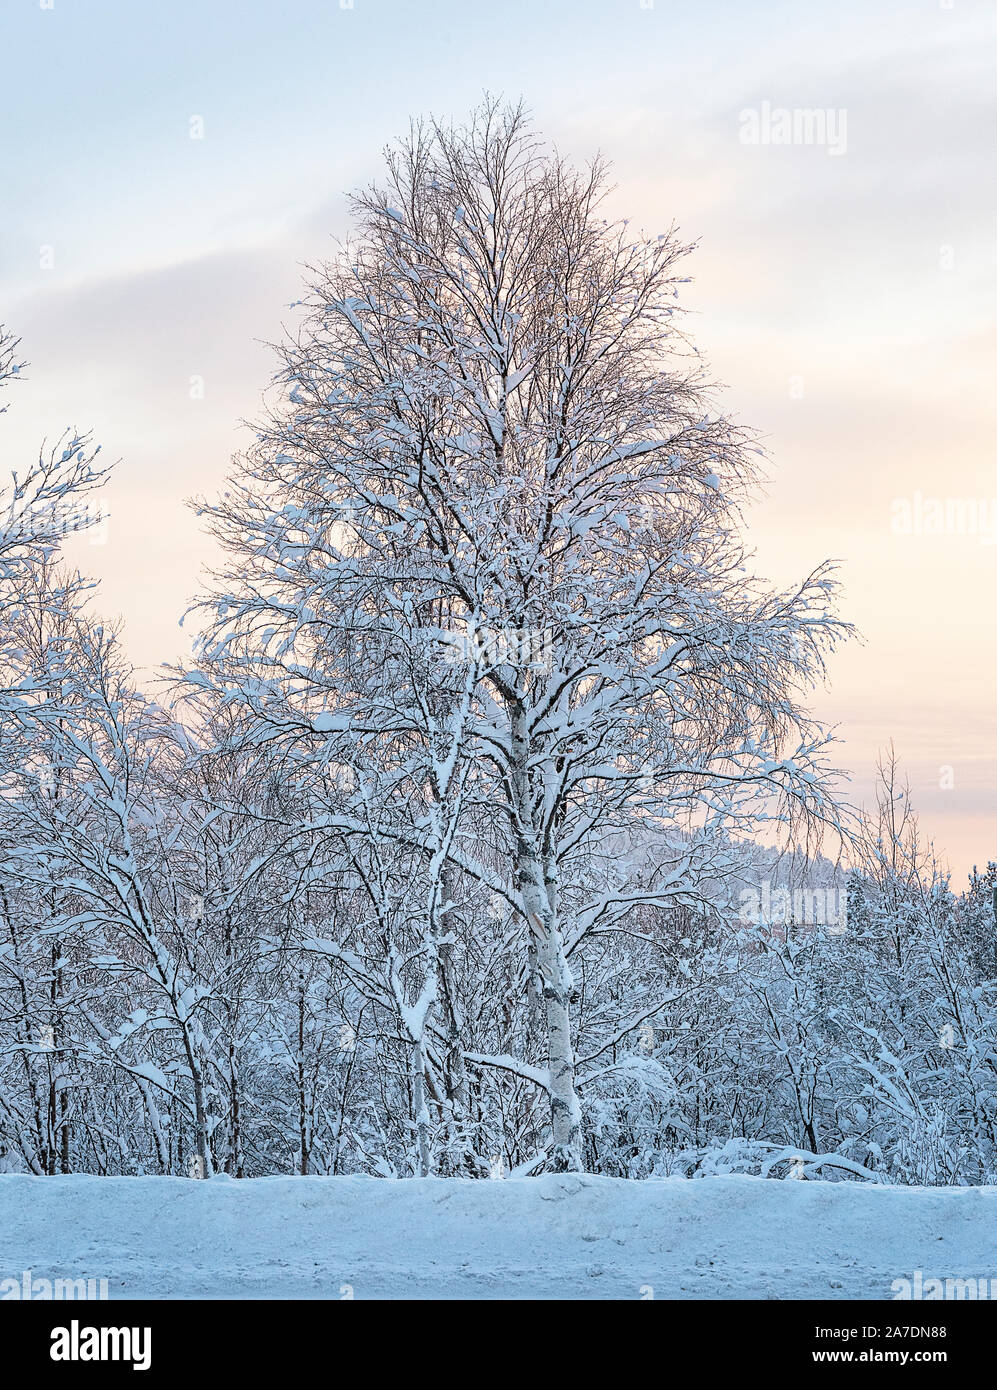 Coucher de soleil féerique en forêt. L'hiver russe. Scène hivernale magnifique et pittoresque. Mourmansk, en Russie. Soft focus Banque D'Images